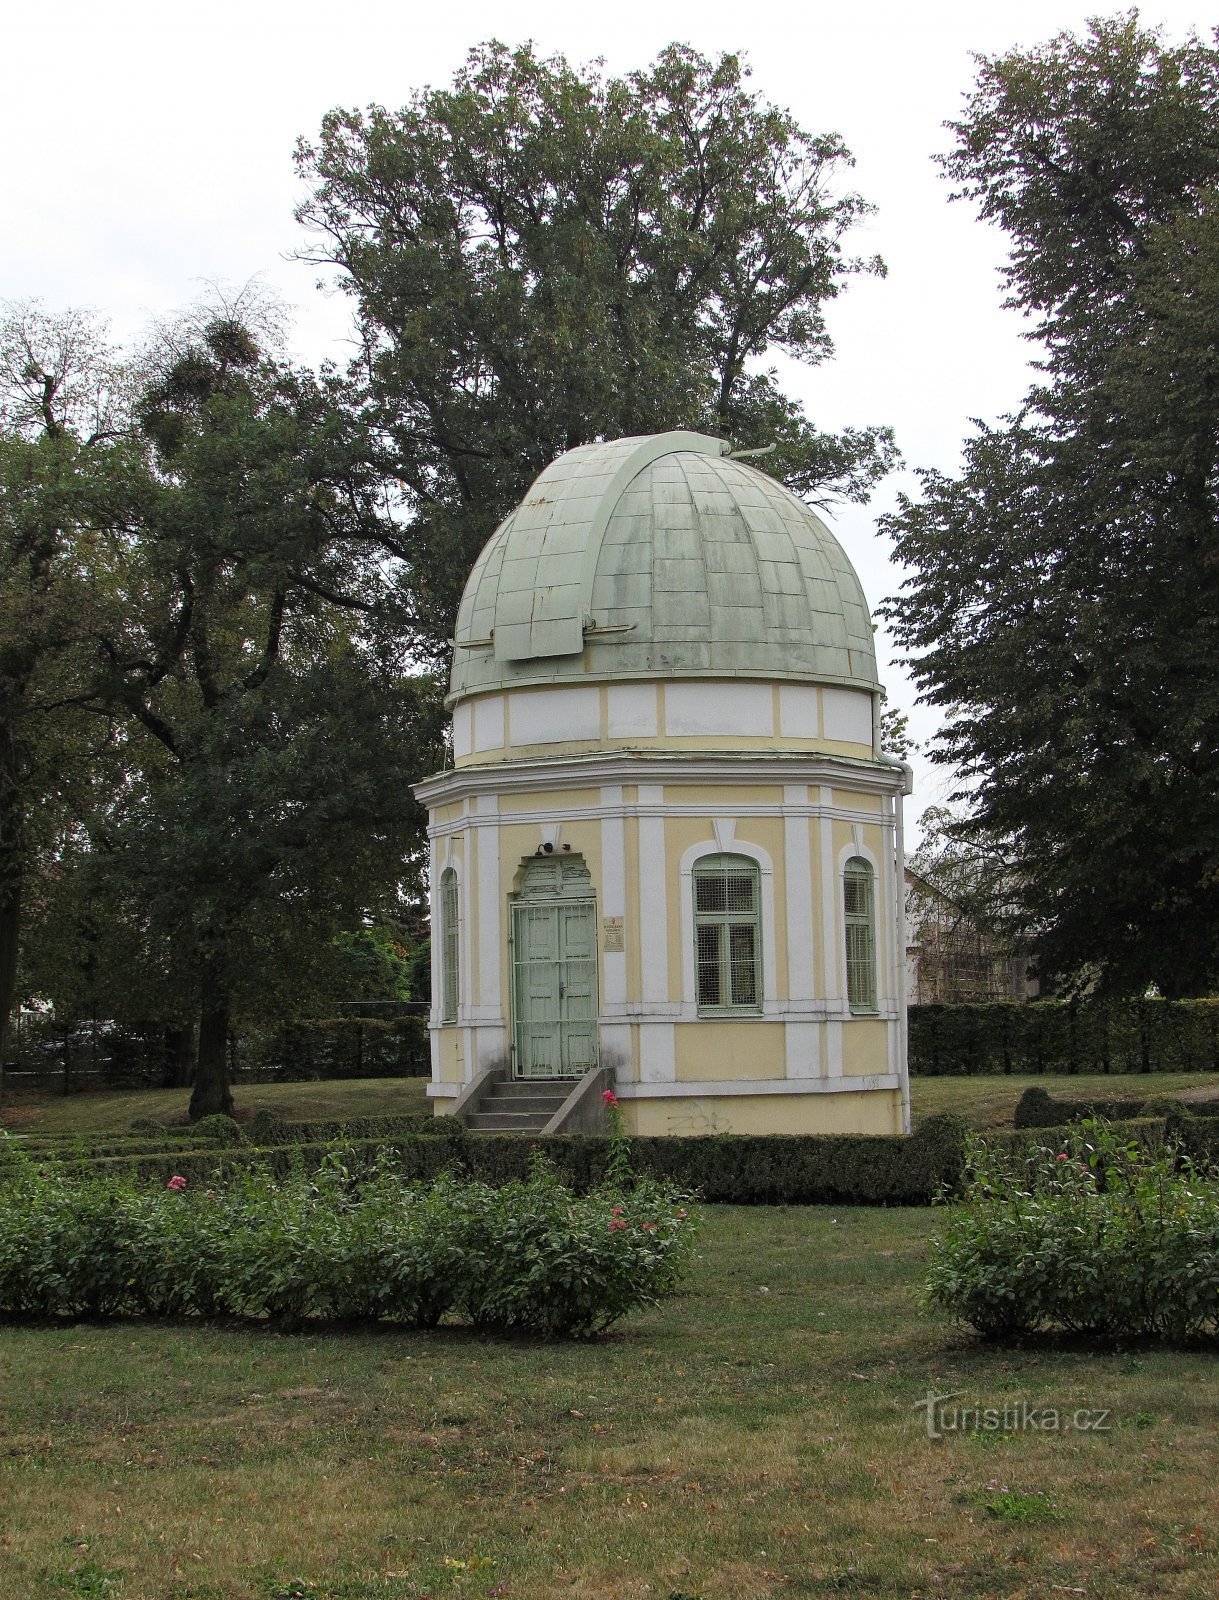 Holešov - muistomerkki säveltäjälle ja observatoriolle